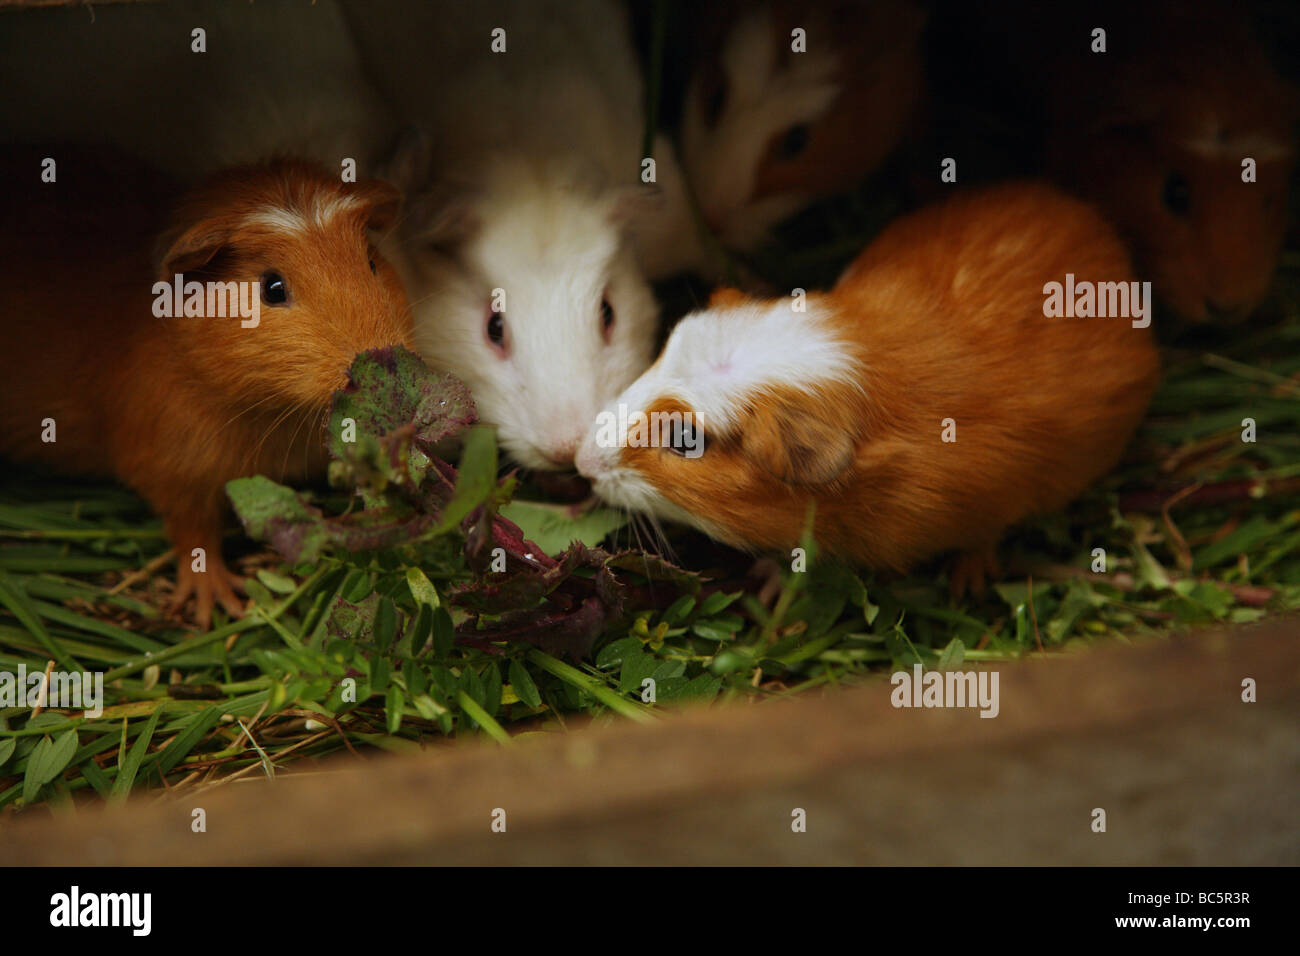 Ecuador, Hacienda Manteles, Guinea pigs (Cavia aperea) Stock Photo